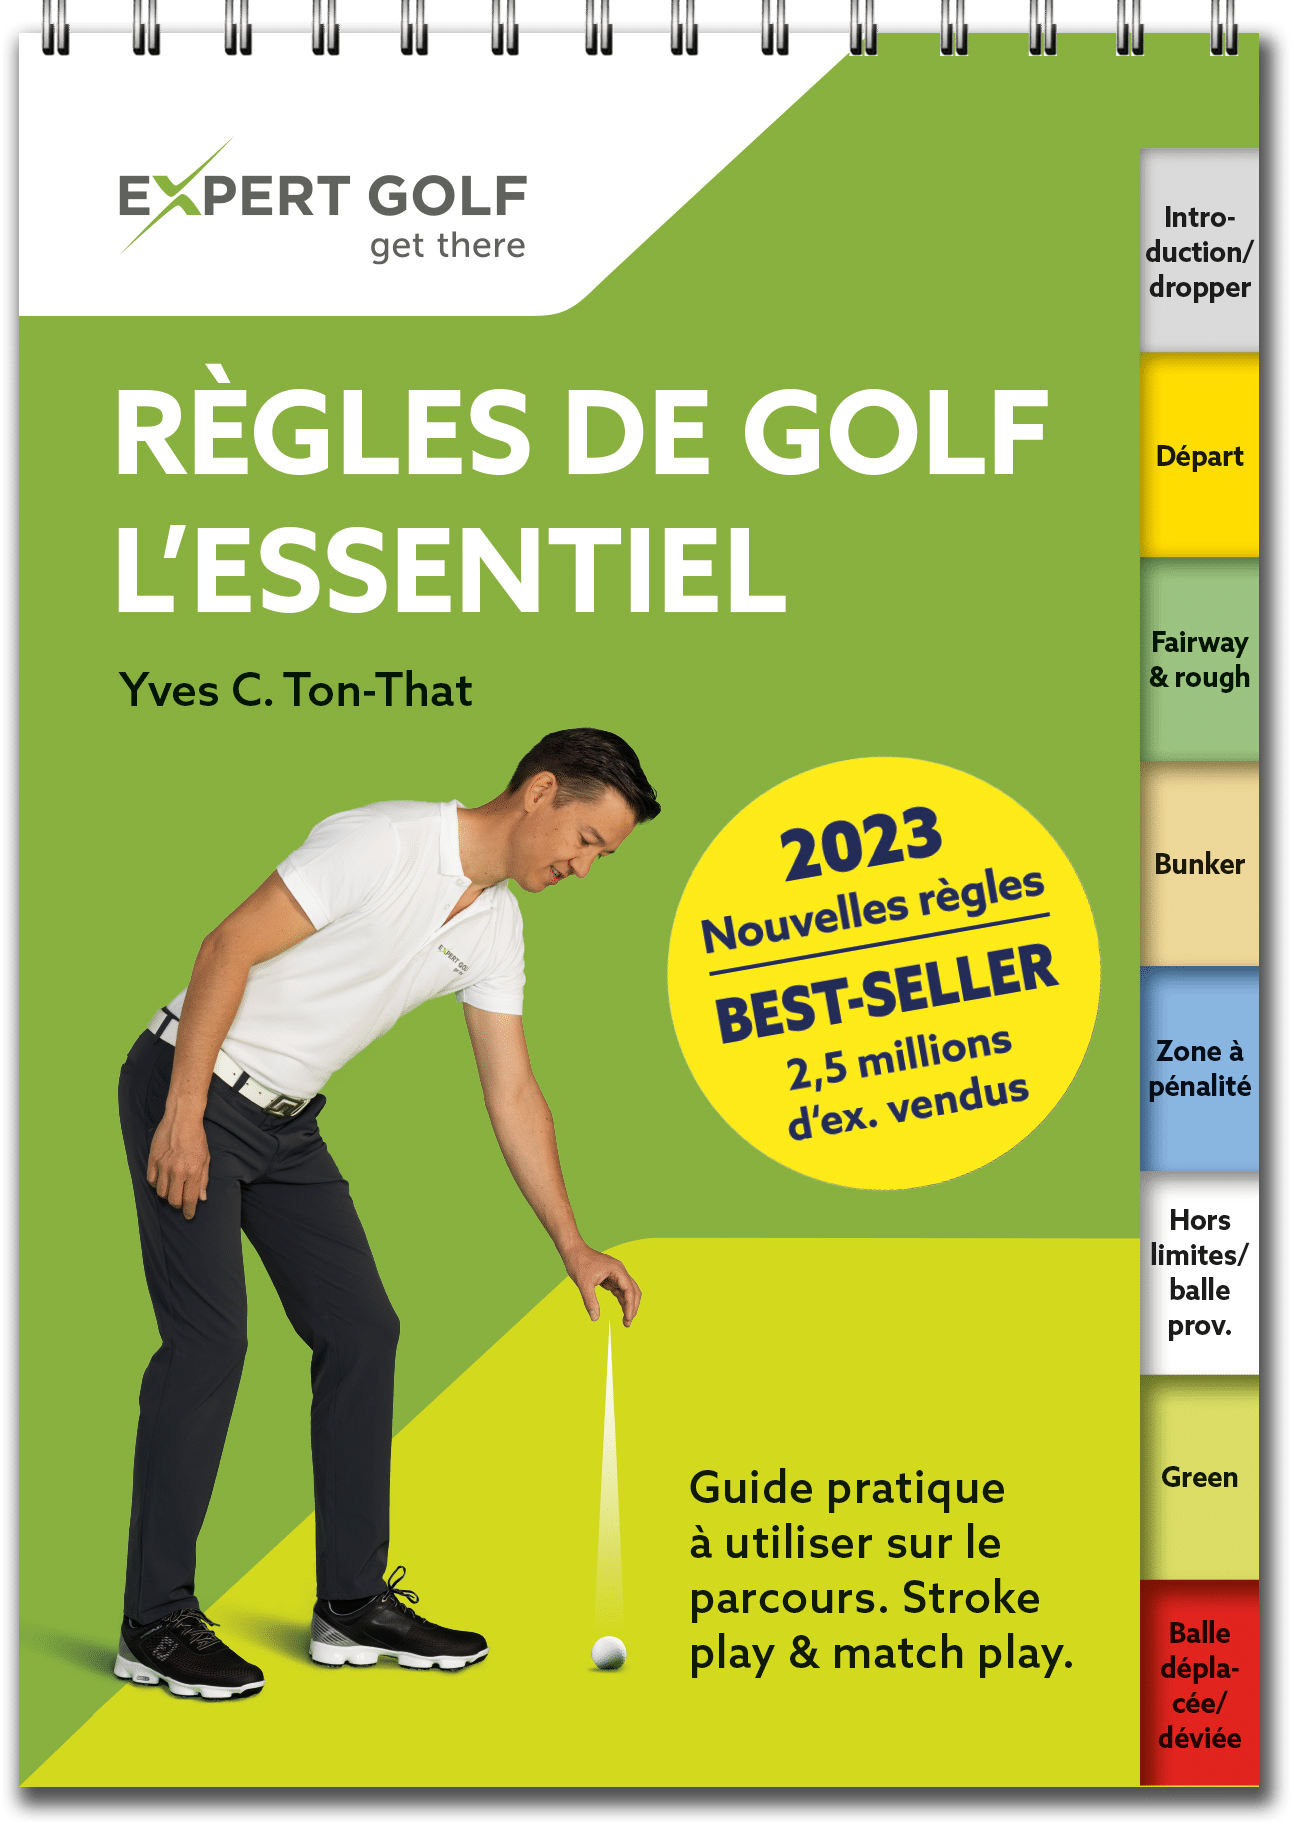 découvrez les dernières modifications des règles de golf du pga tour et restez informé des changements à venir pour améliorer votre pratique du golf.